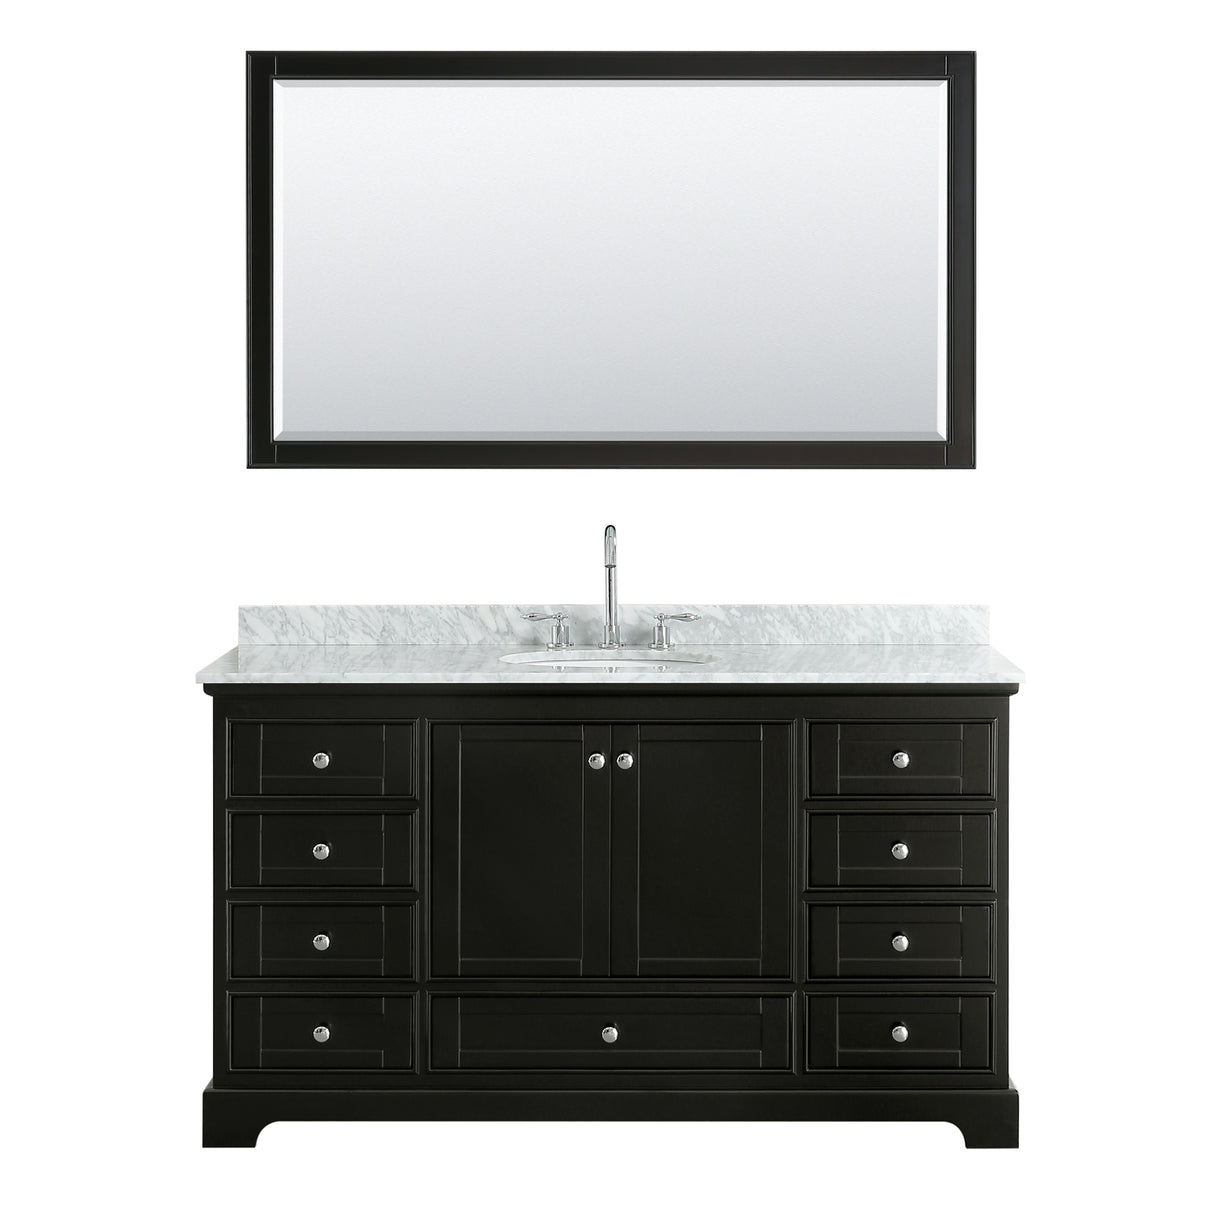 Deborah 60 Inch Single Bathroom Vanity in Dark Espresso White Carrara Marble Countertop Undermount Oval Sink and 58 Inch Mirror